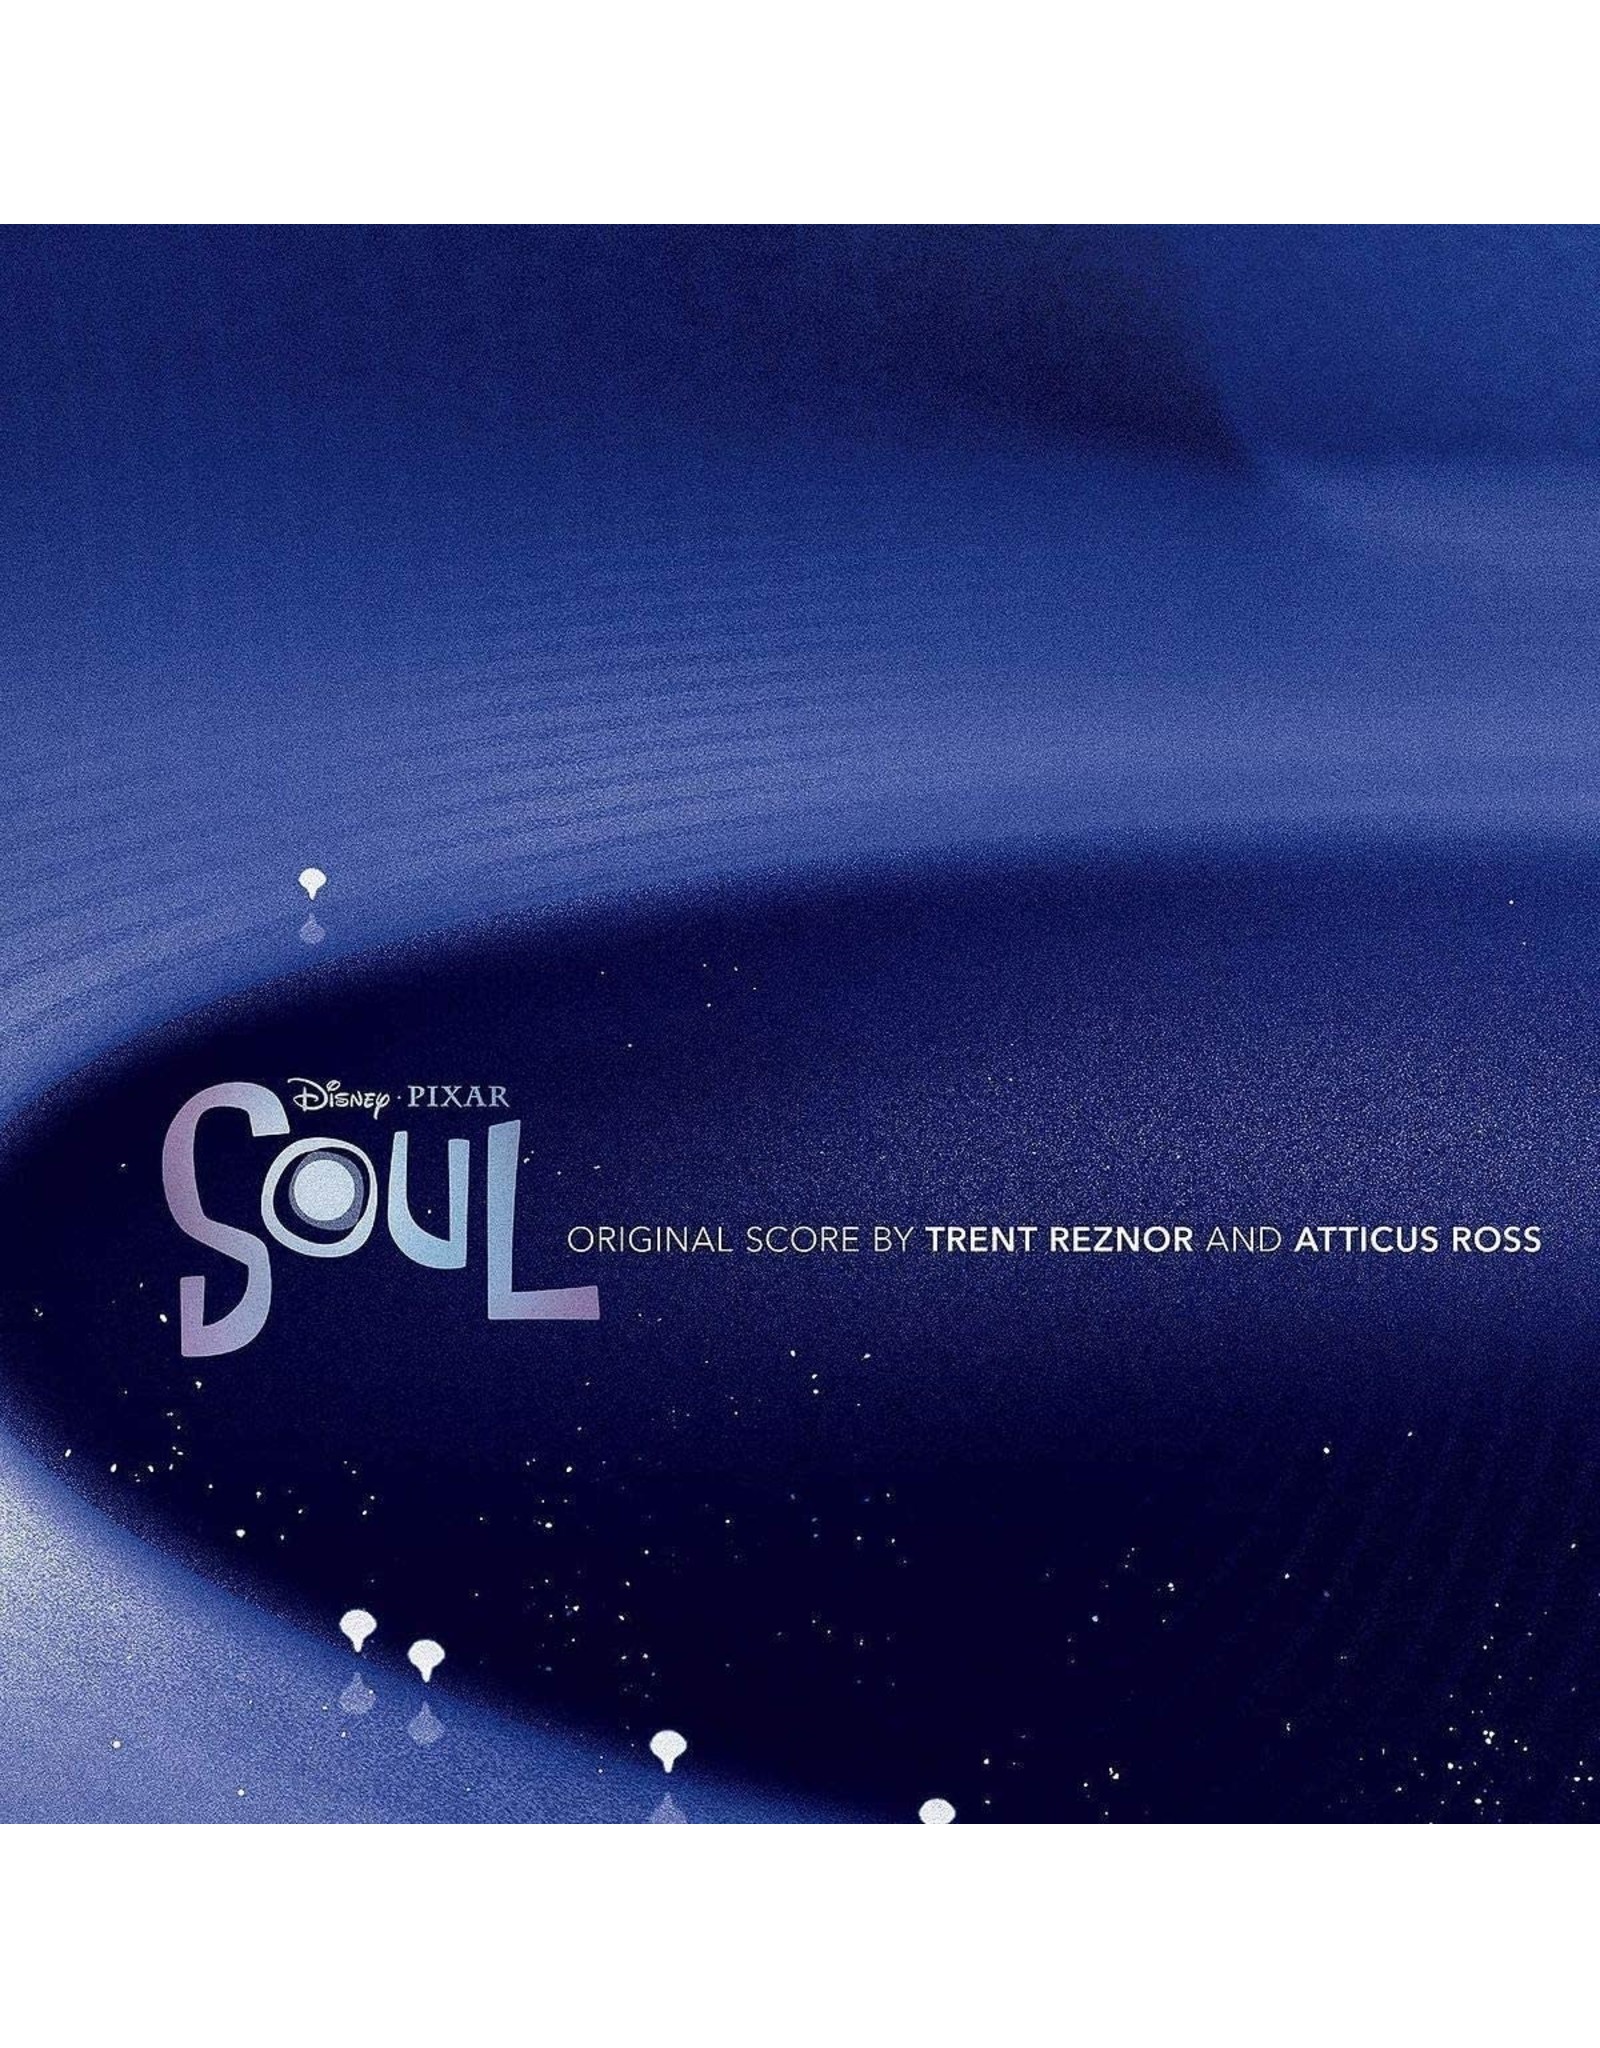 Trent Reznor / Atticus Ross - Pixar's 'Soul' (Original Score)